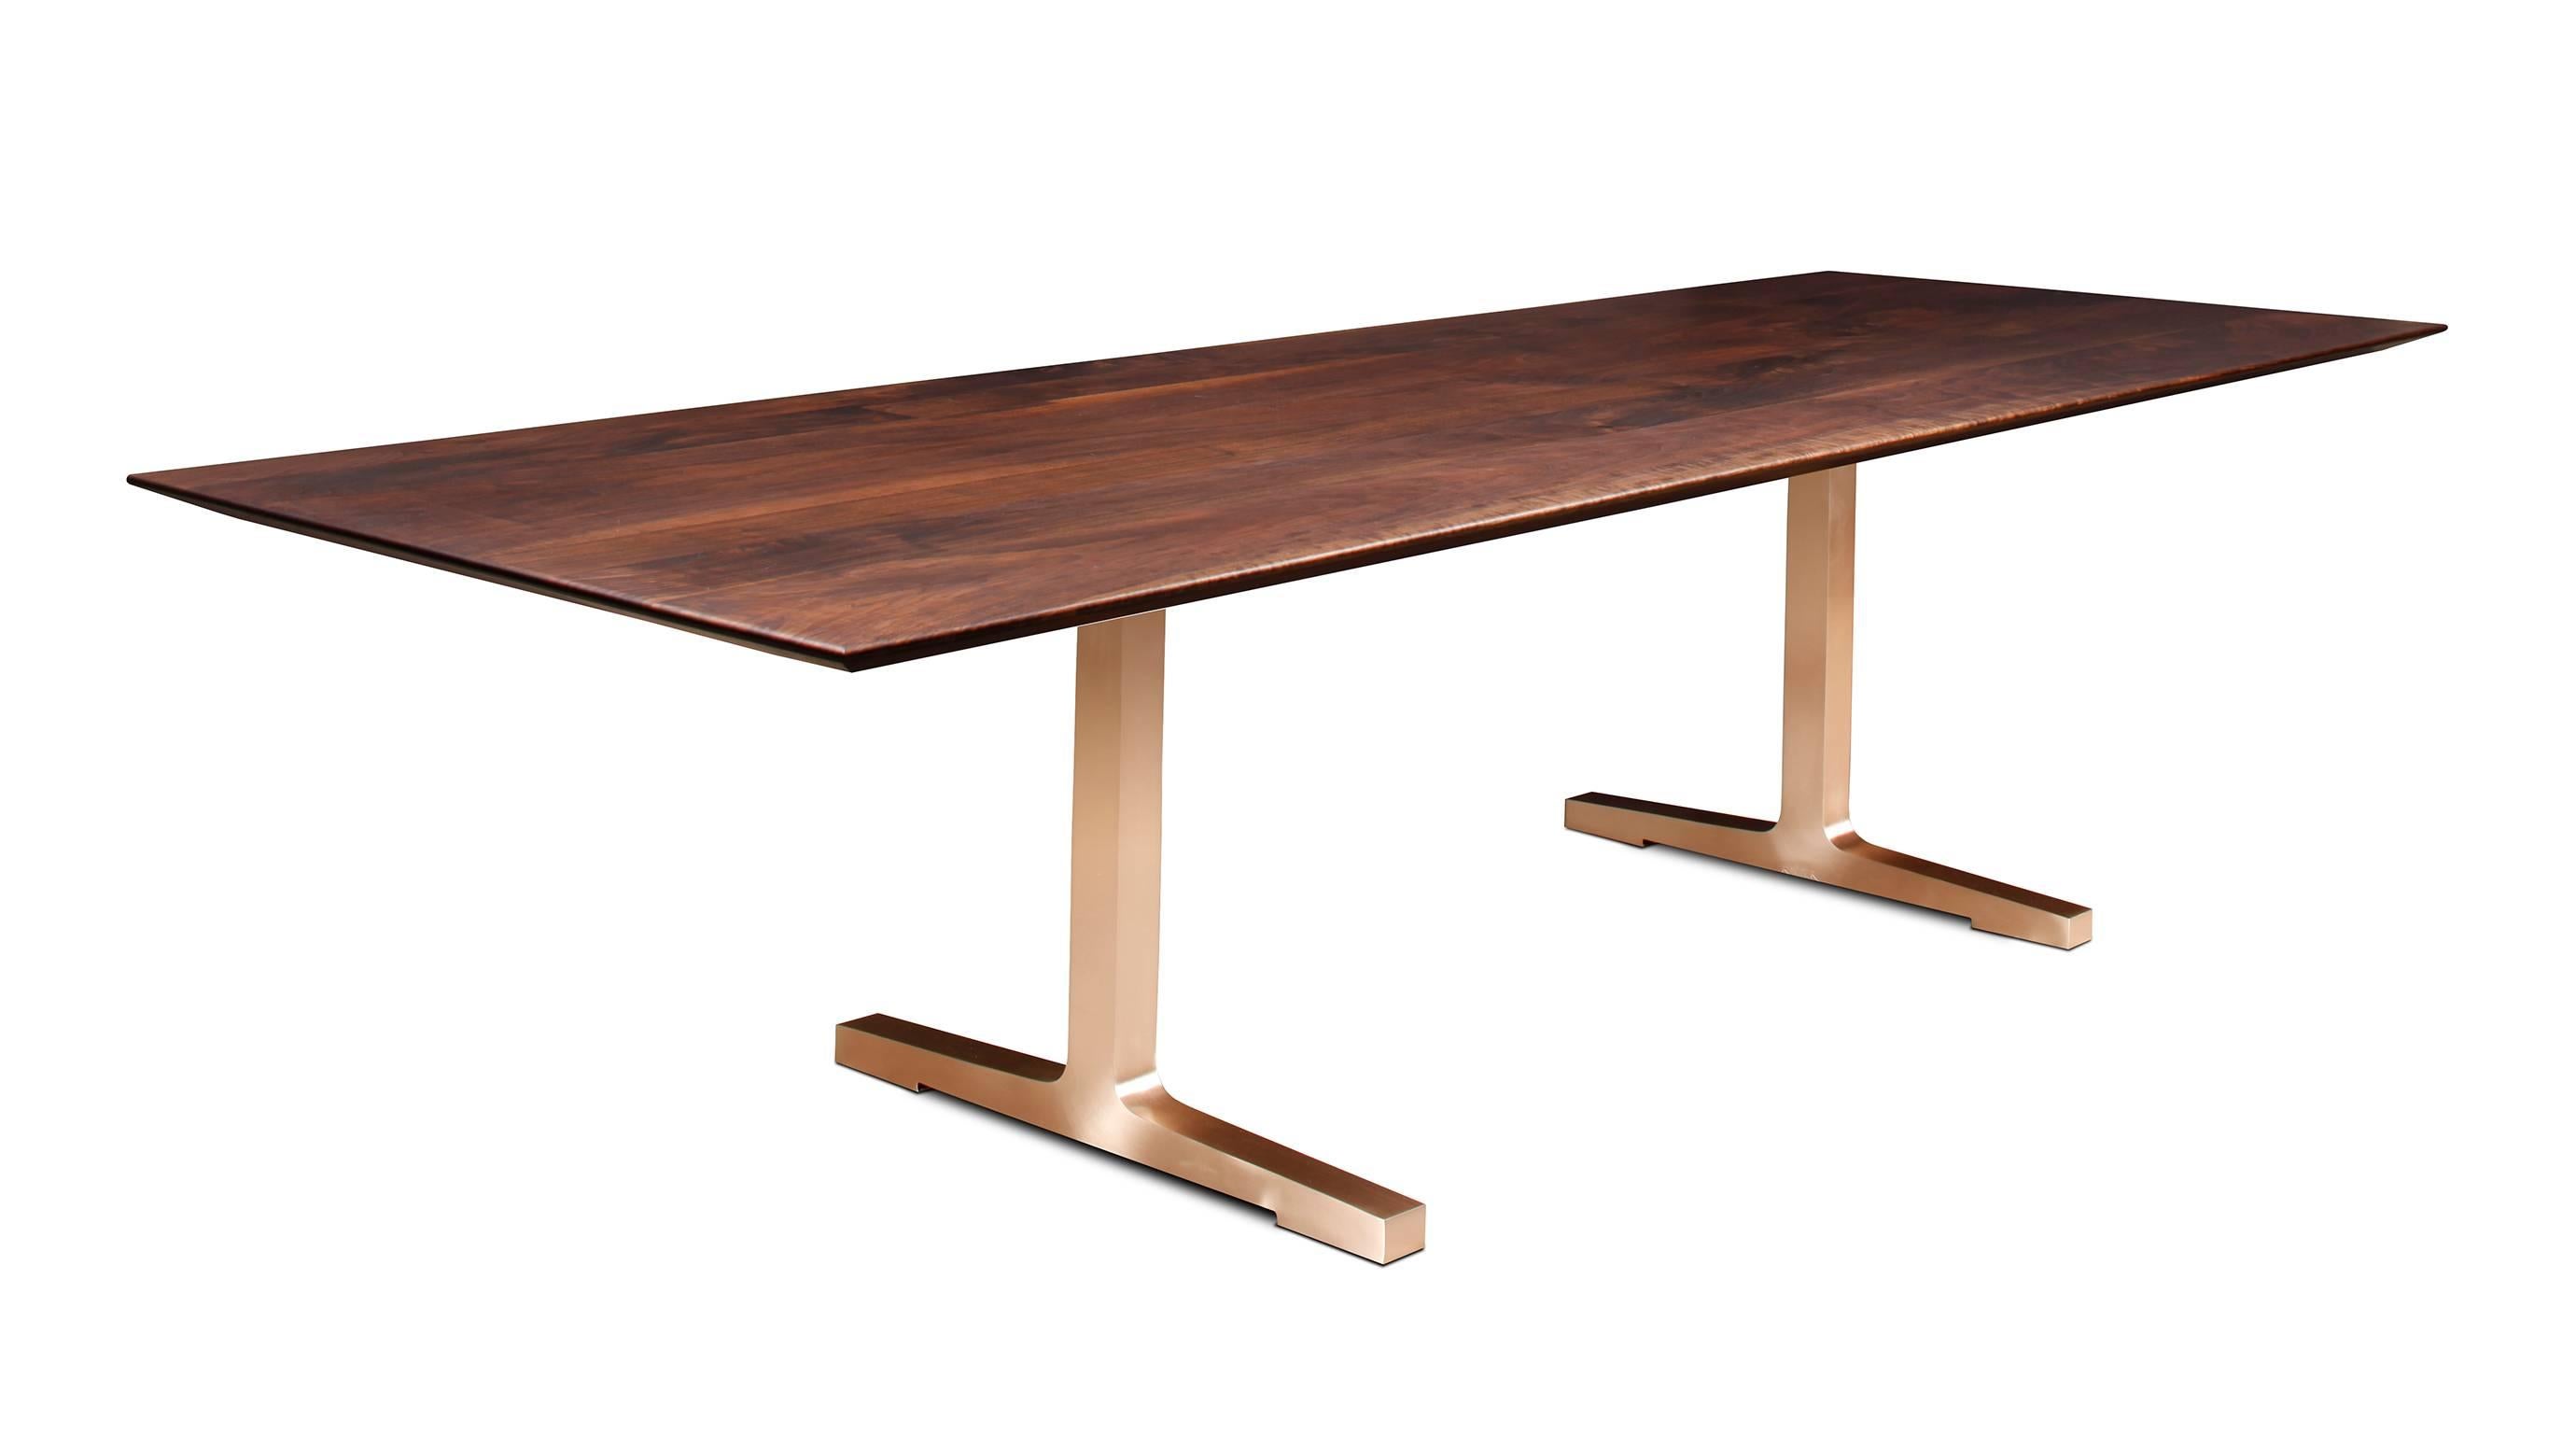 Le caractère subtil et épuré de la table Soho est destiné à résister à l'épreuve du temps, tant sur le plan stylistique que physique. Selon Florian Roeper, 